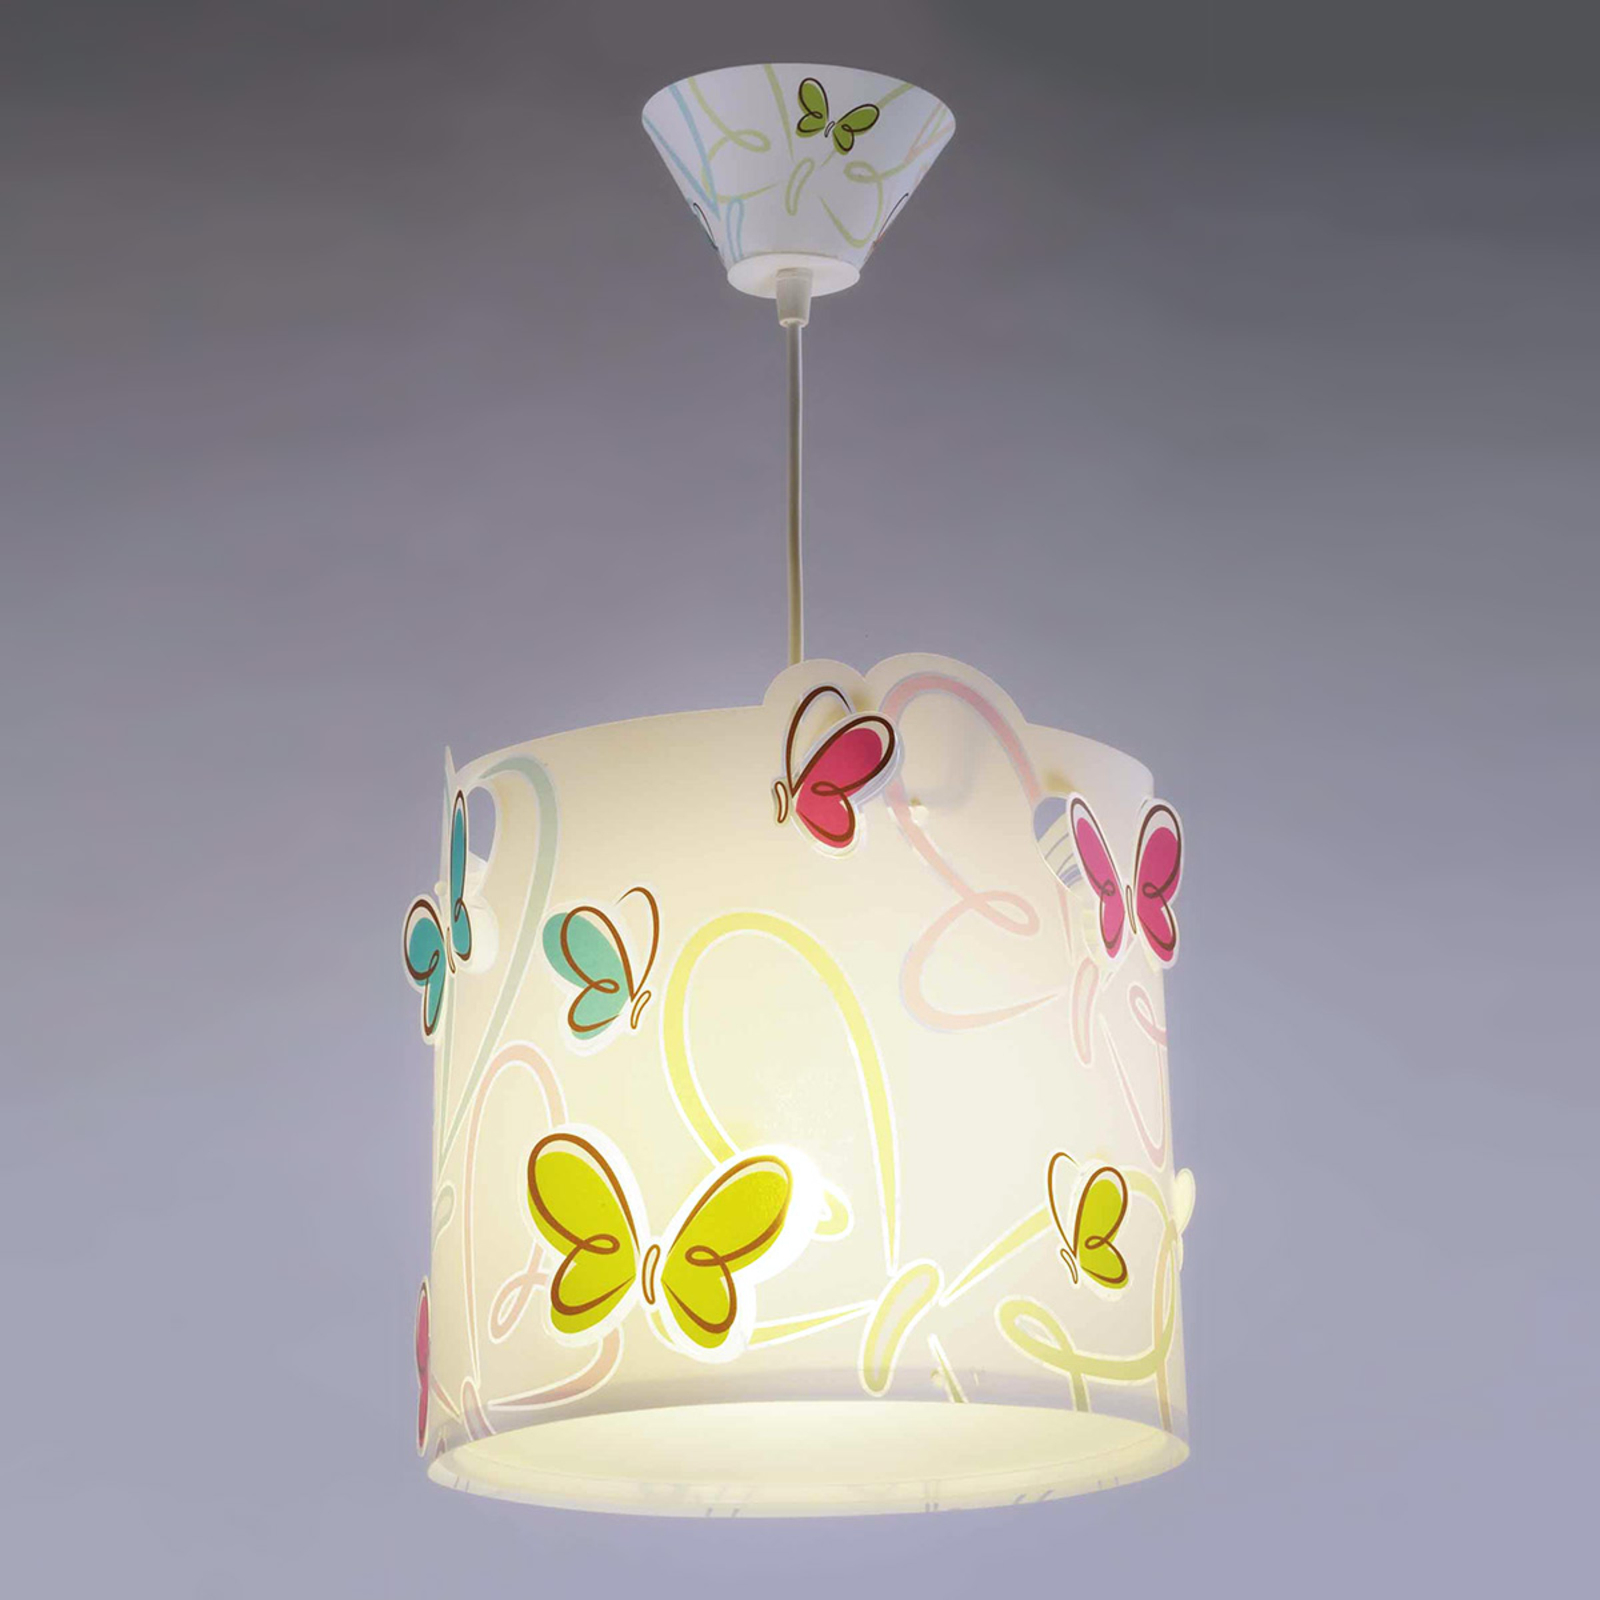 Spring-like Butterfly pendant light